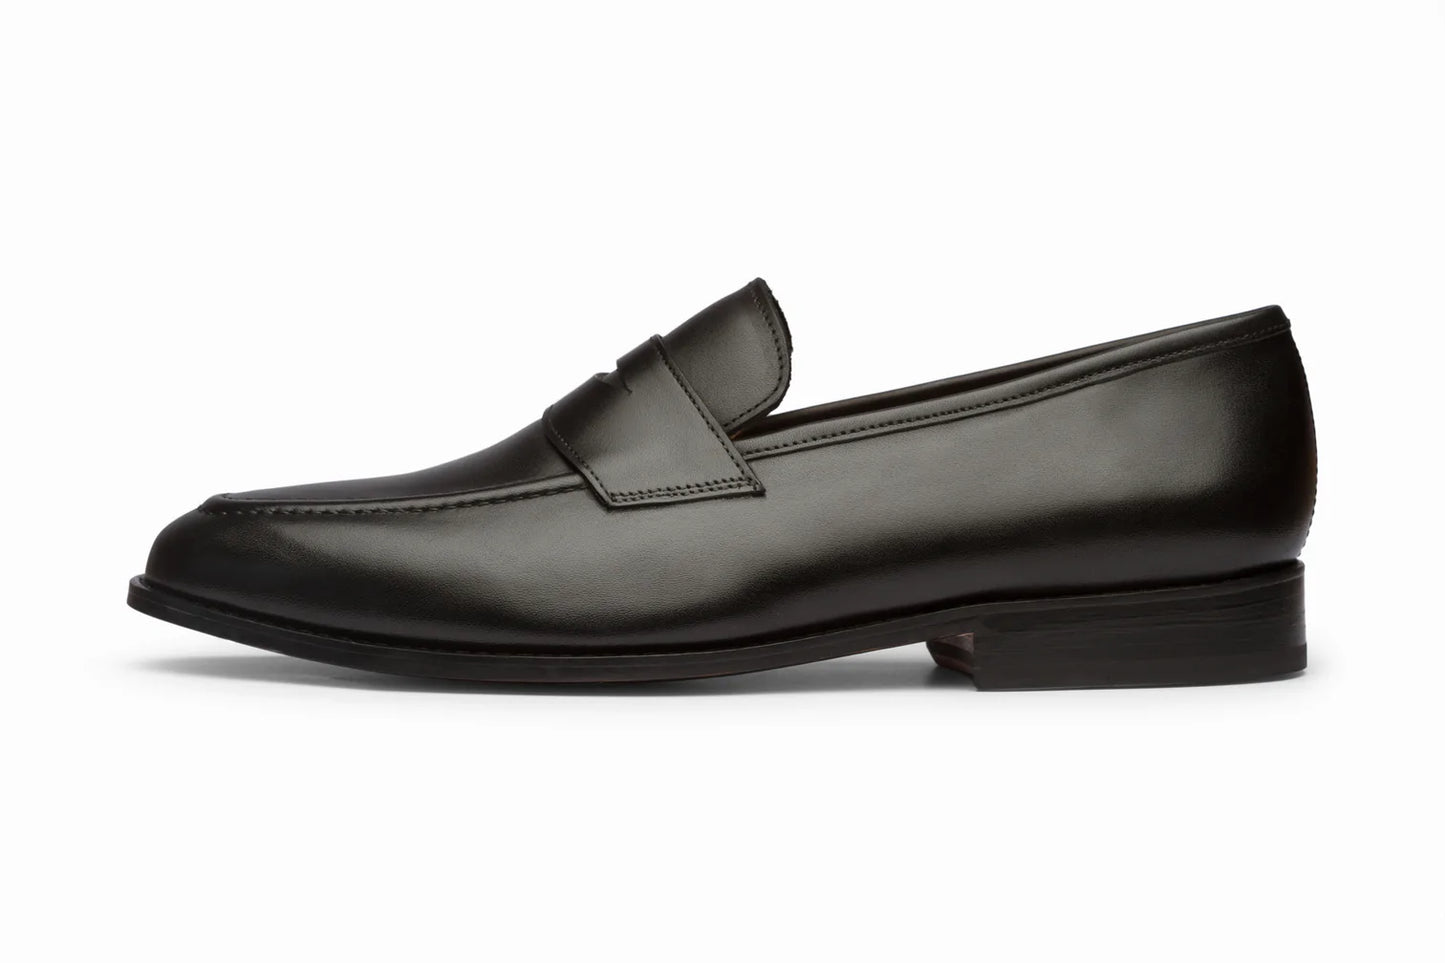 Penny loafer black, formal shoes for men in Dubai.